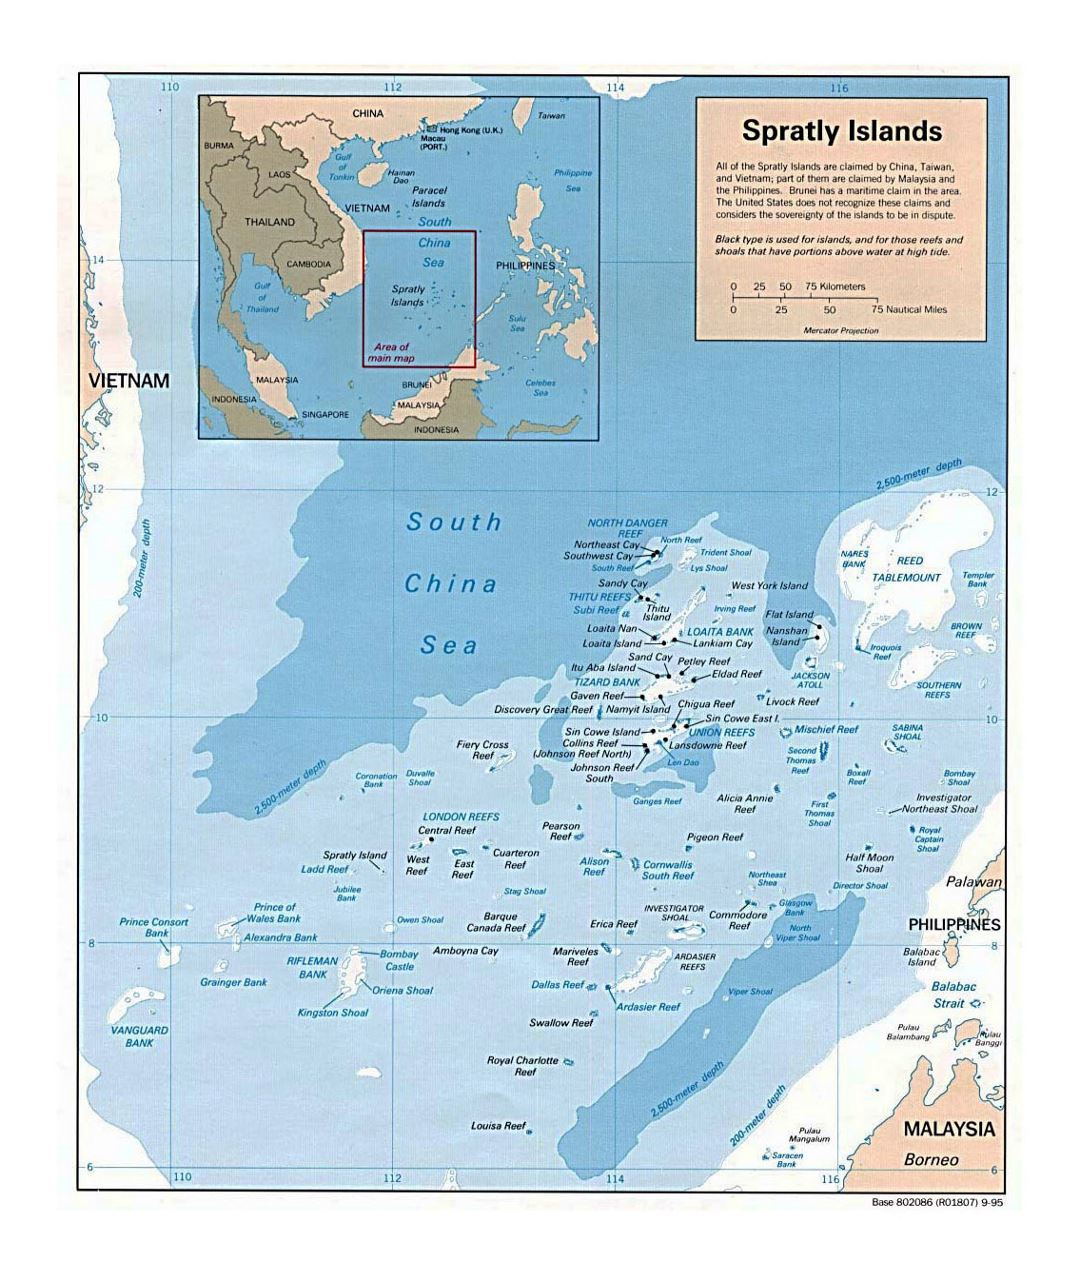 Grande mapa político de las Islas Spratly - 1995